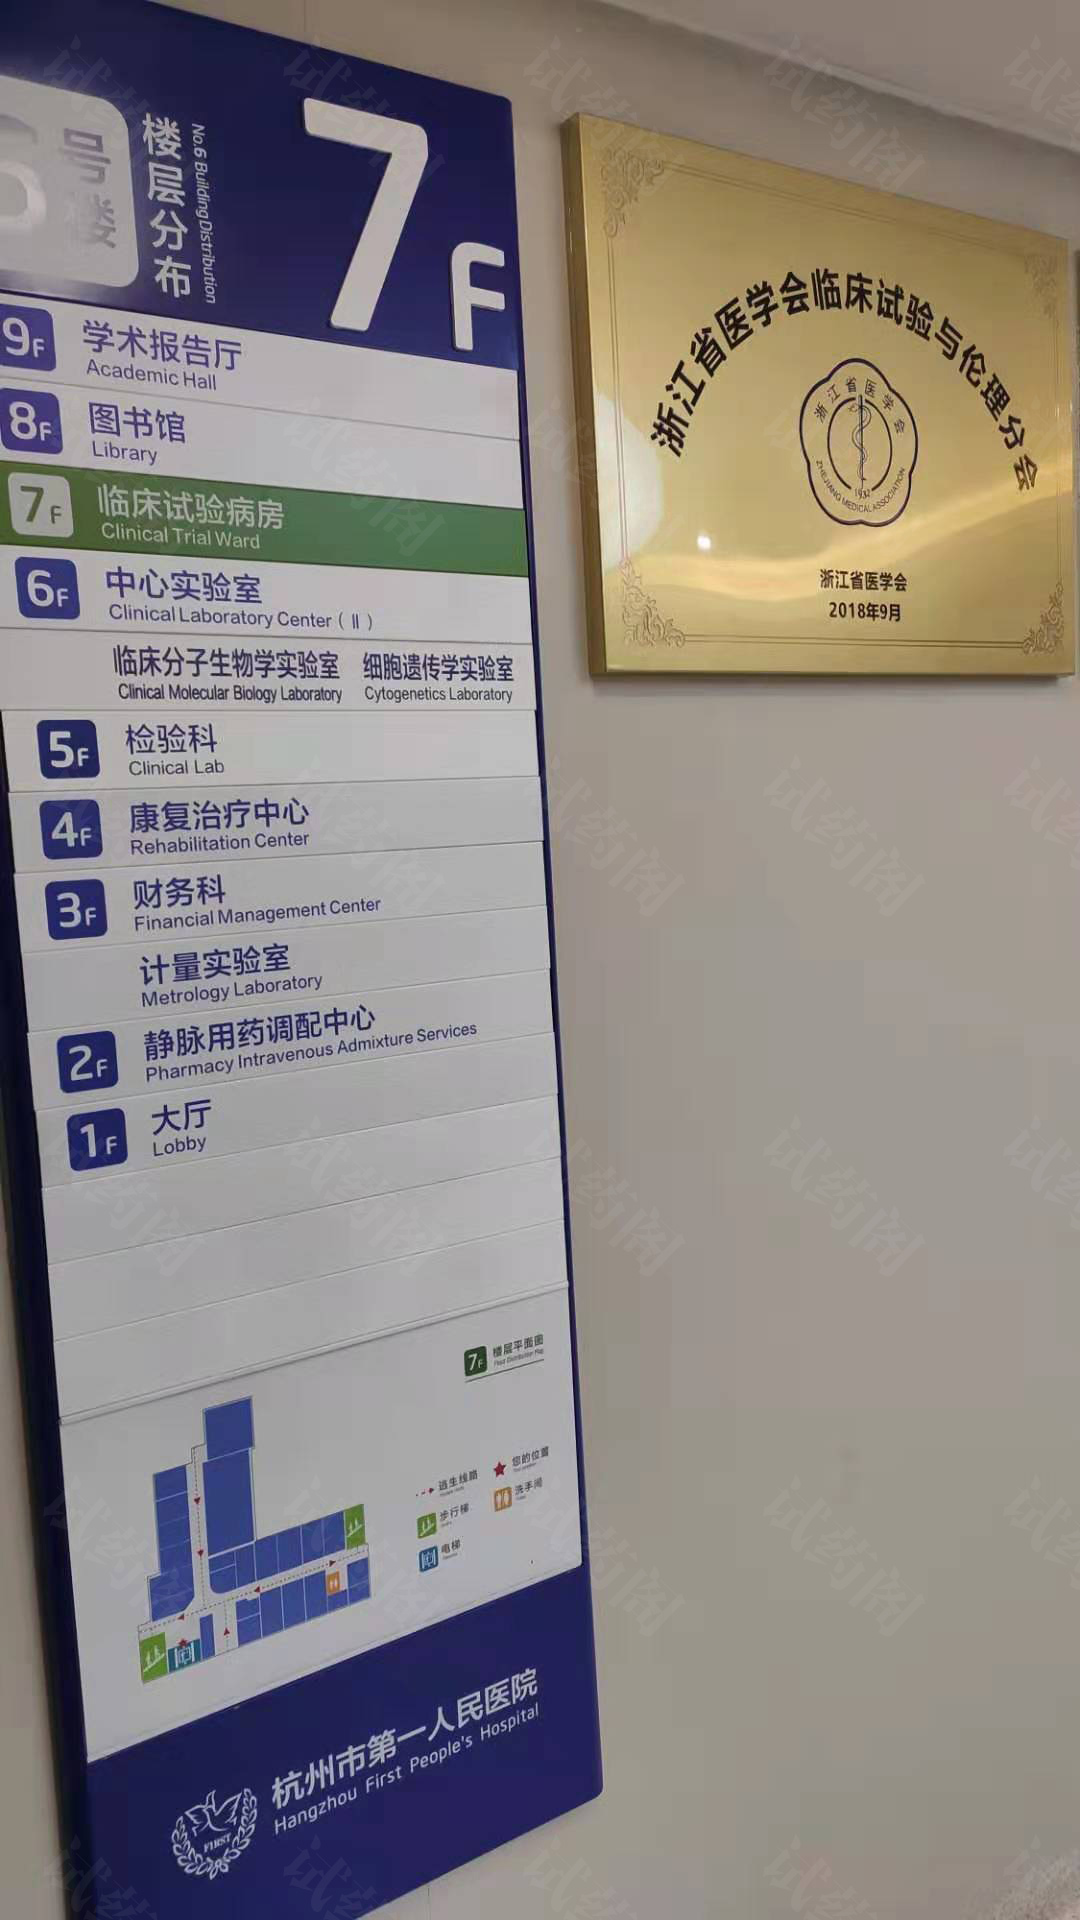 杭州市第一人民医院临床试验病房位于5号楼7层